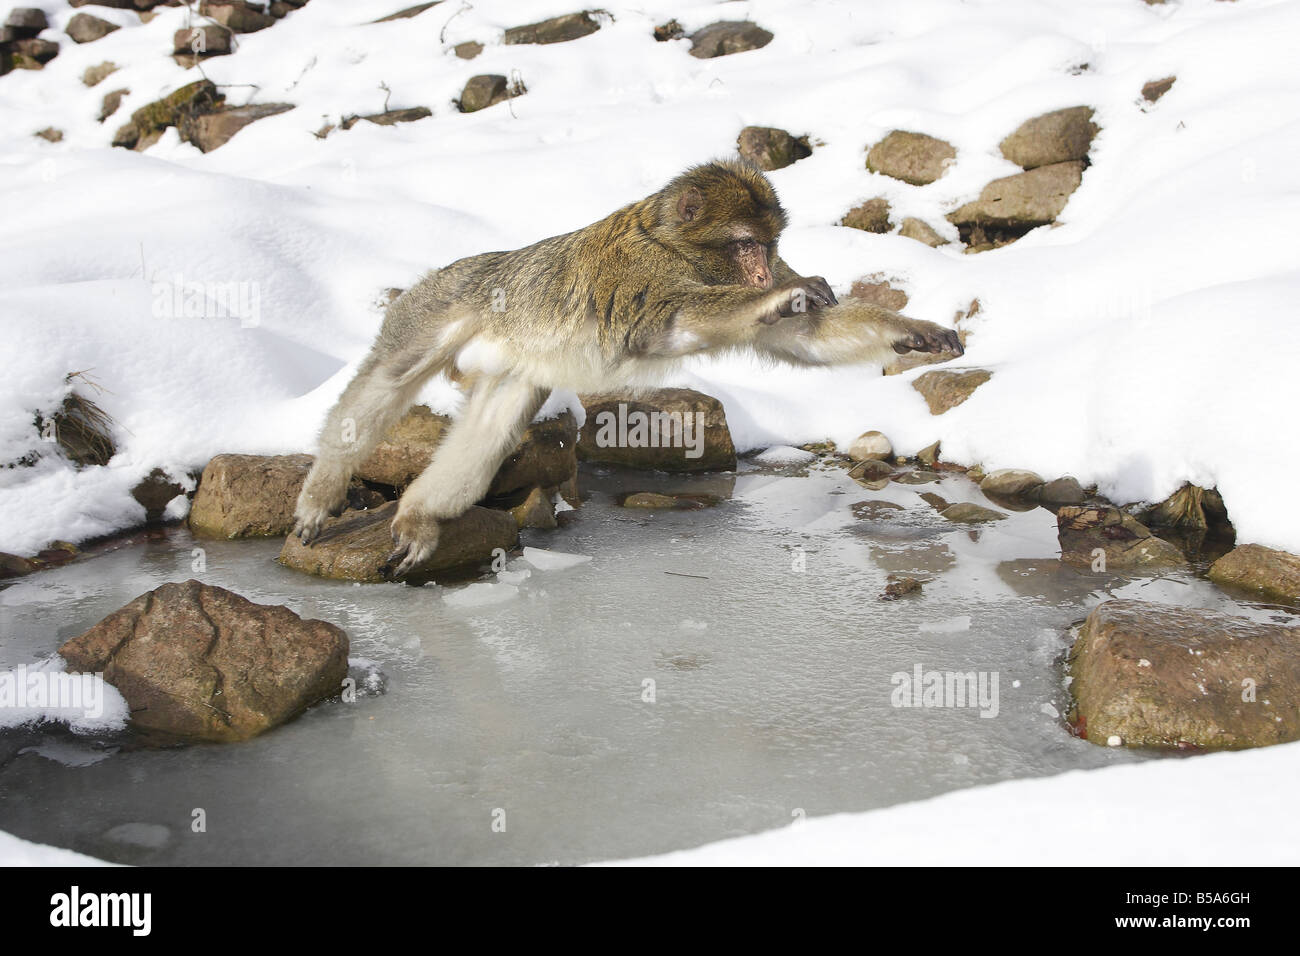 Macaque de barbarie, Barbary Ape (Macaca sylvanus), sauter par dessus le trou d'eau gelé Banque D'Images